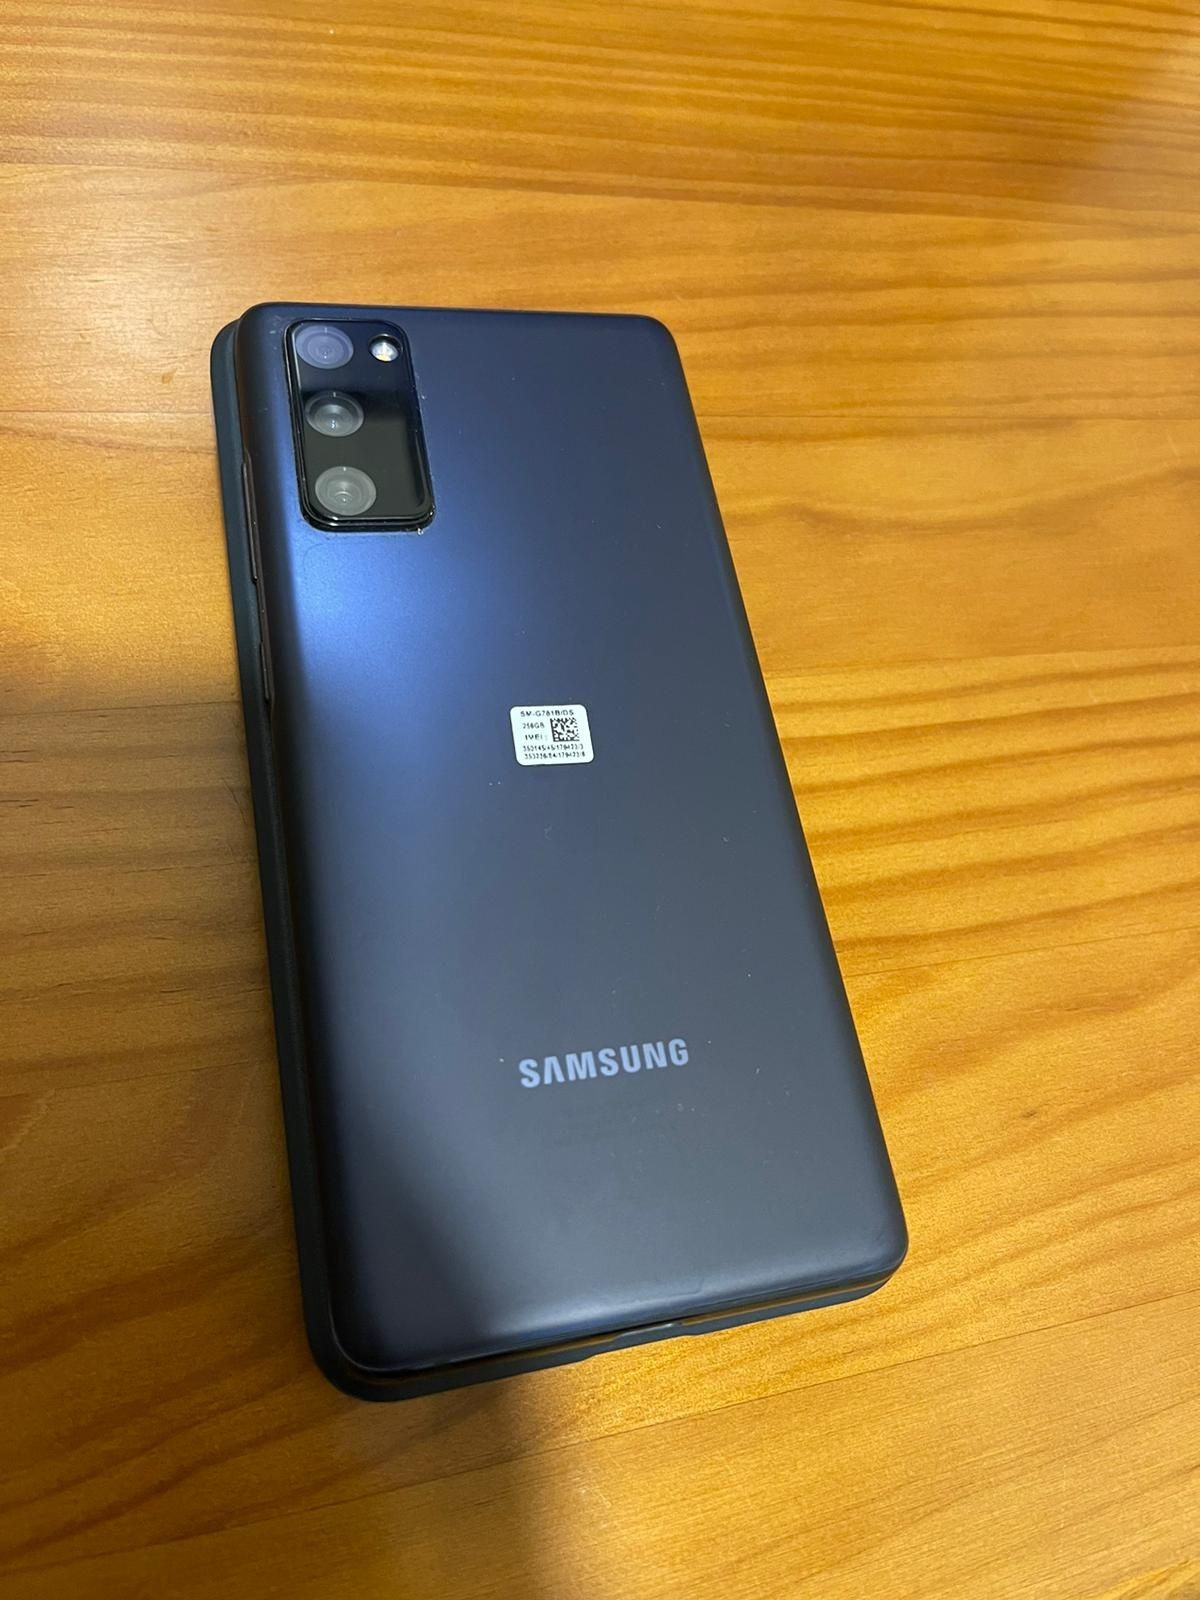 Samsung Galaxy S20 FE, 5G 8gb - 256gb, Azul (Portes Grátis)